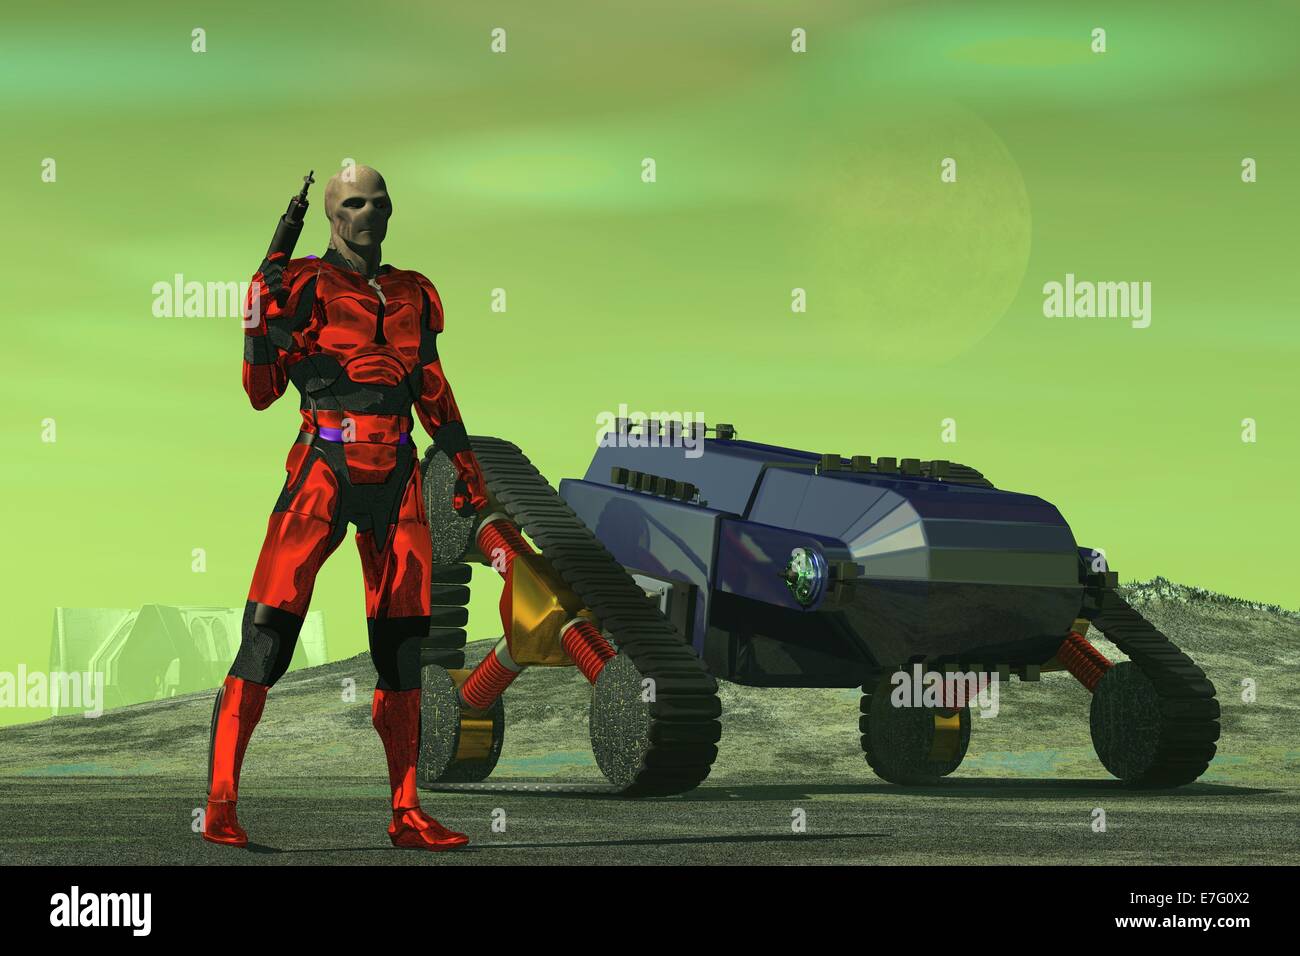 Alien Figur im roten metallischen Körper Rüstung hält Raygun Stand in der Nähe von überwachten Fahrzeug und Umfragen öde Landschaft unter grünen Himmel Stockfoto